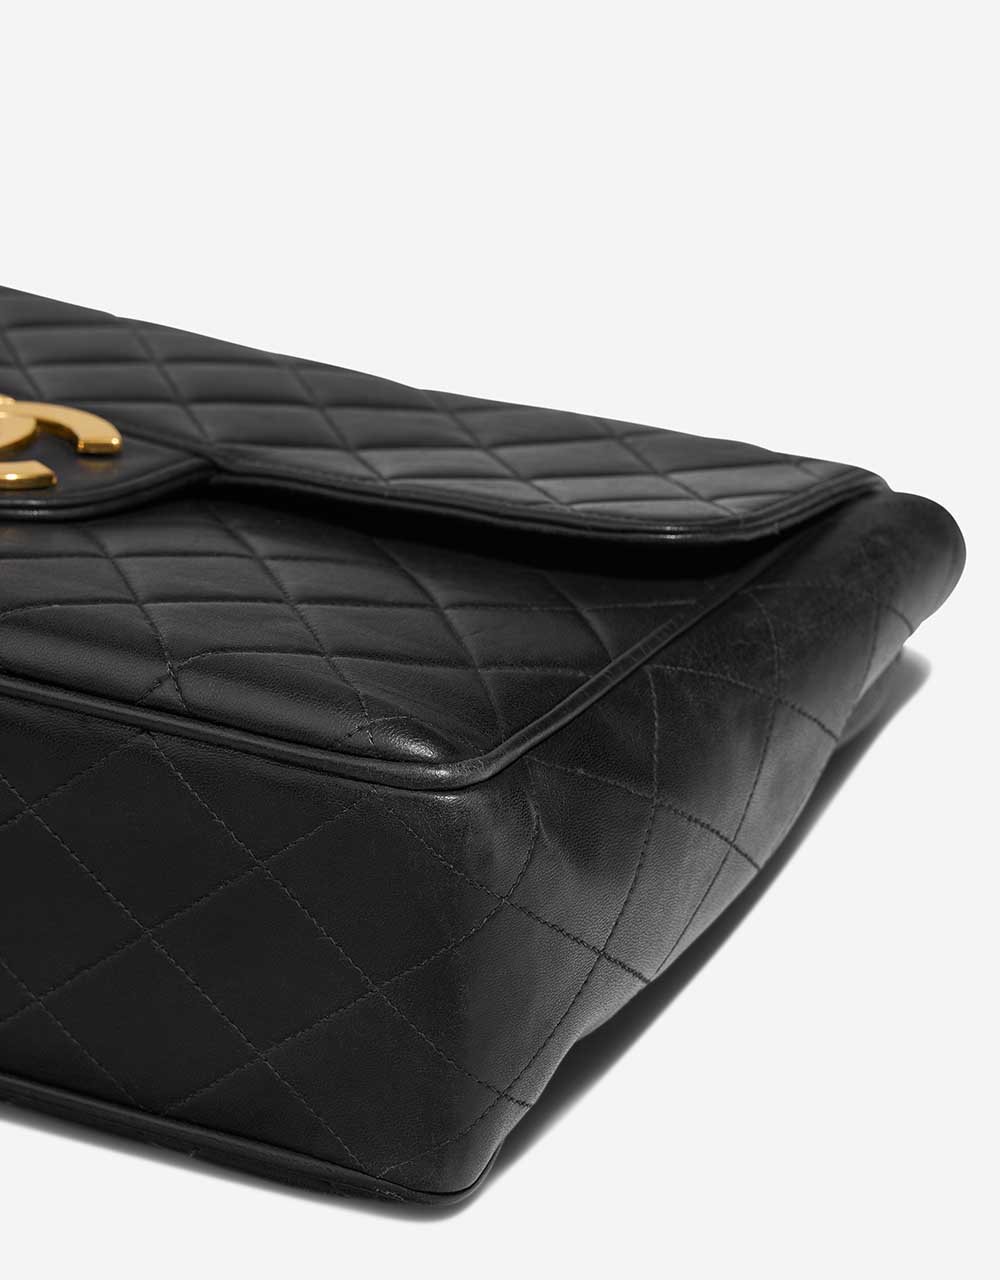 Chanel Timeless Jumbo Black Gebrauchsspuren 3 | Verkaufen Sie Ihre Designertasche auf Saclab.com